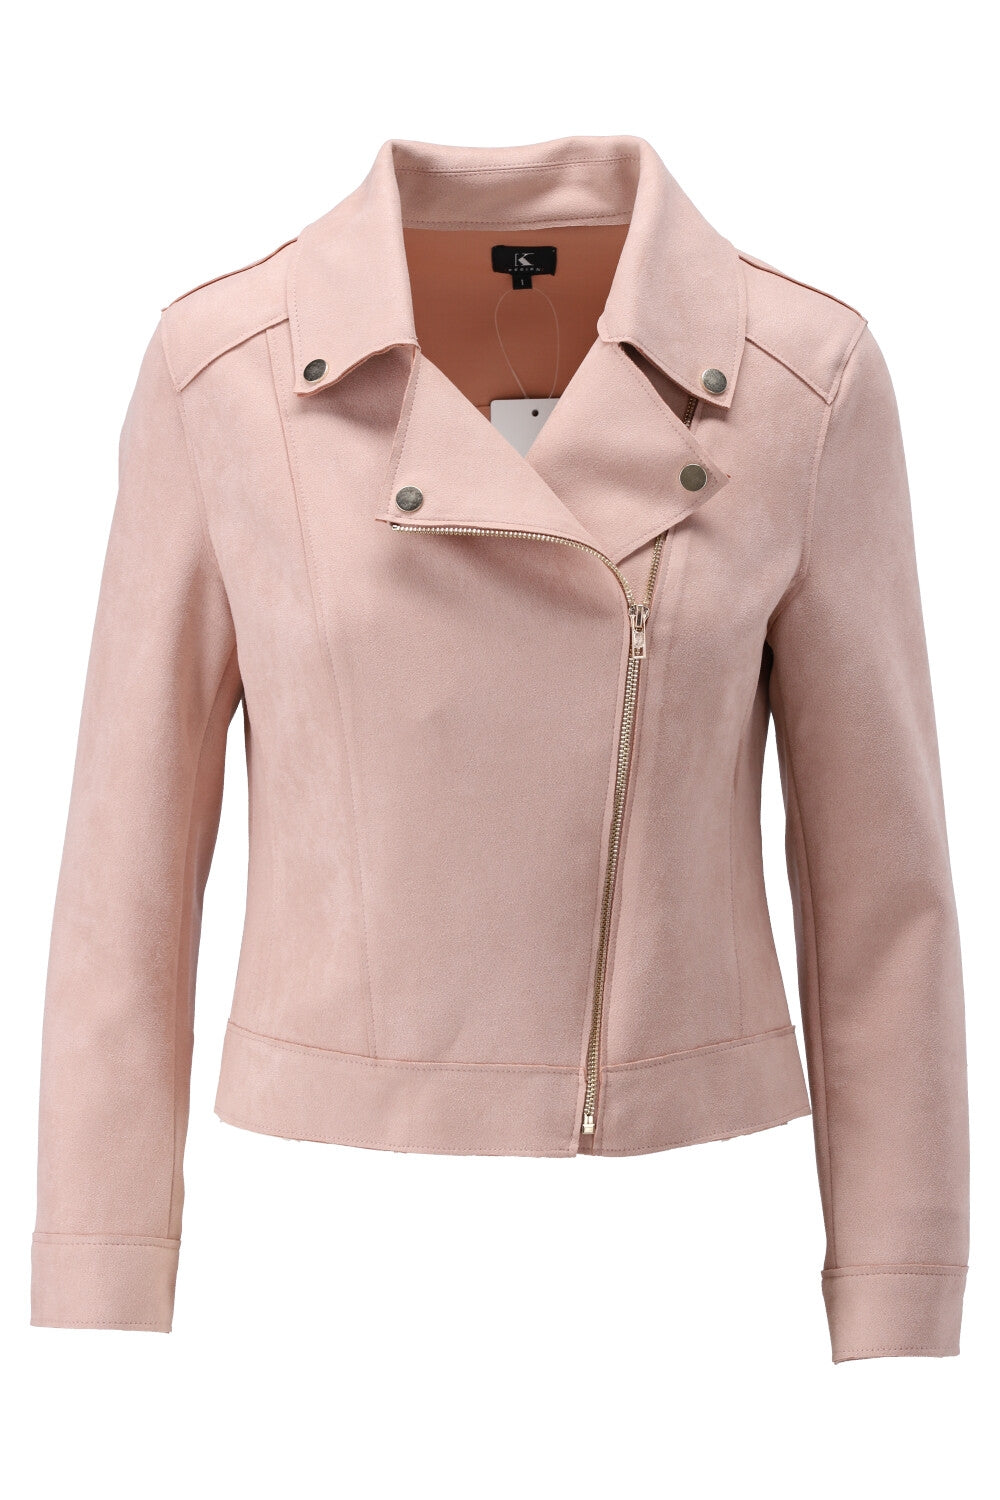 K-Design jacket S300 - SOFT PINK